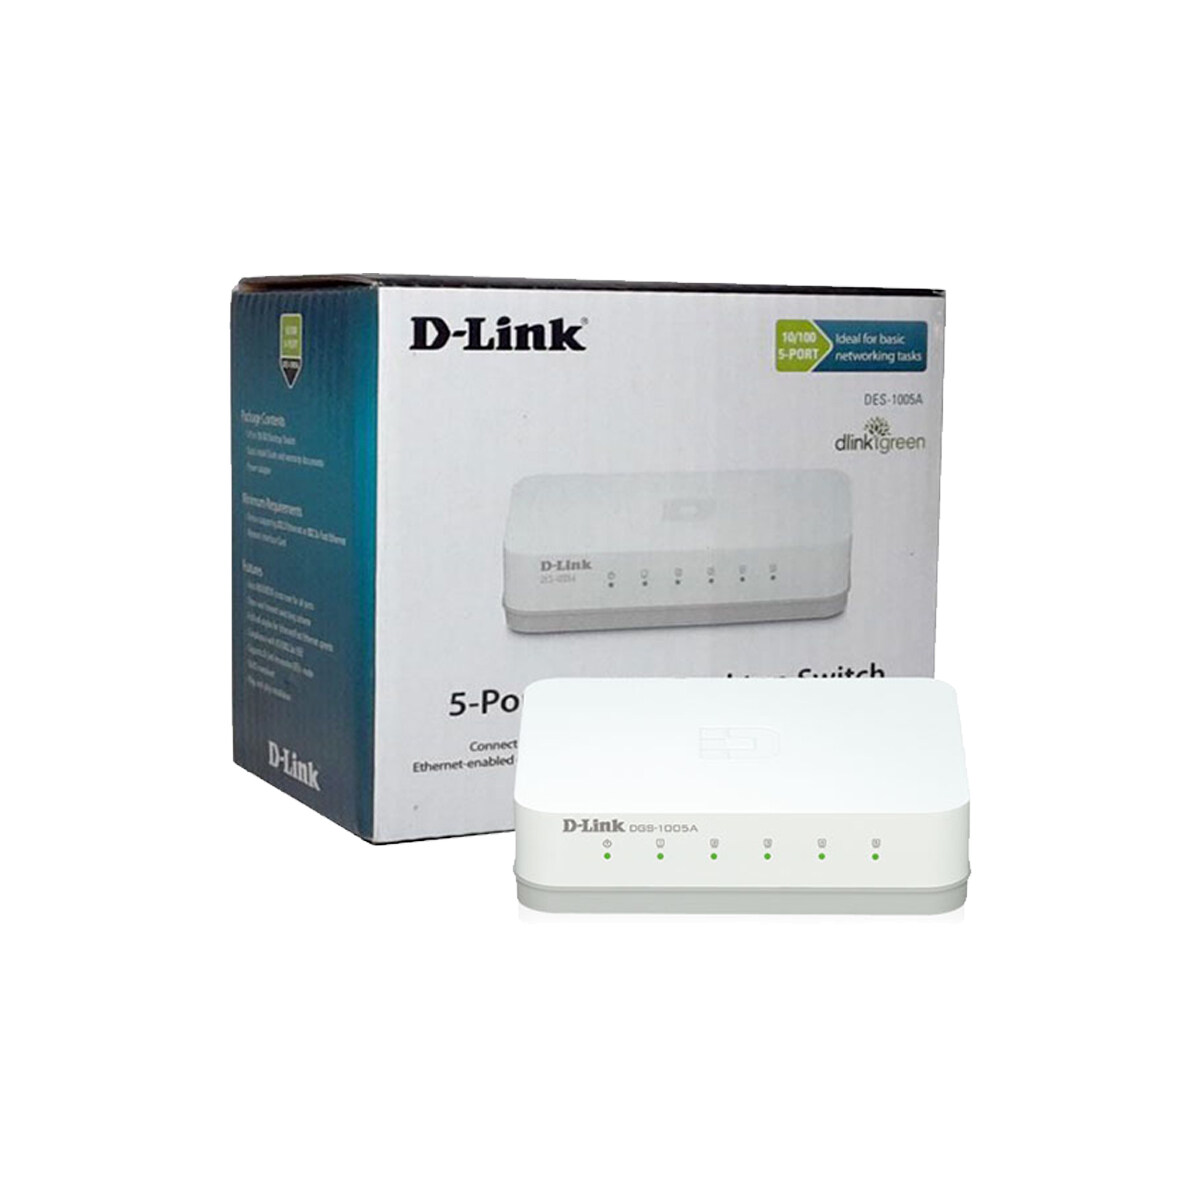 D-Link DES-1005C/DES-1005A 5-Port Fast Ethernet Desktop Switch In Plastic Casing